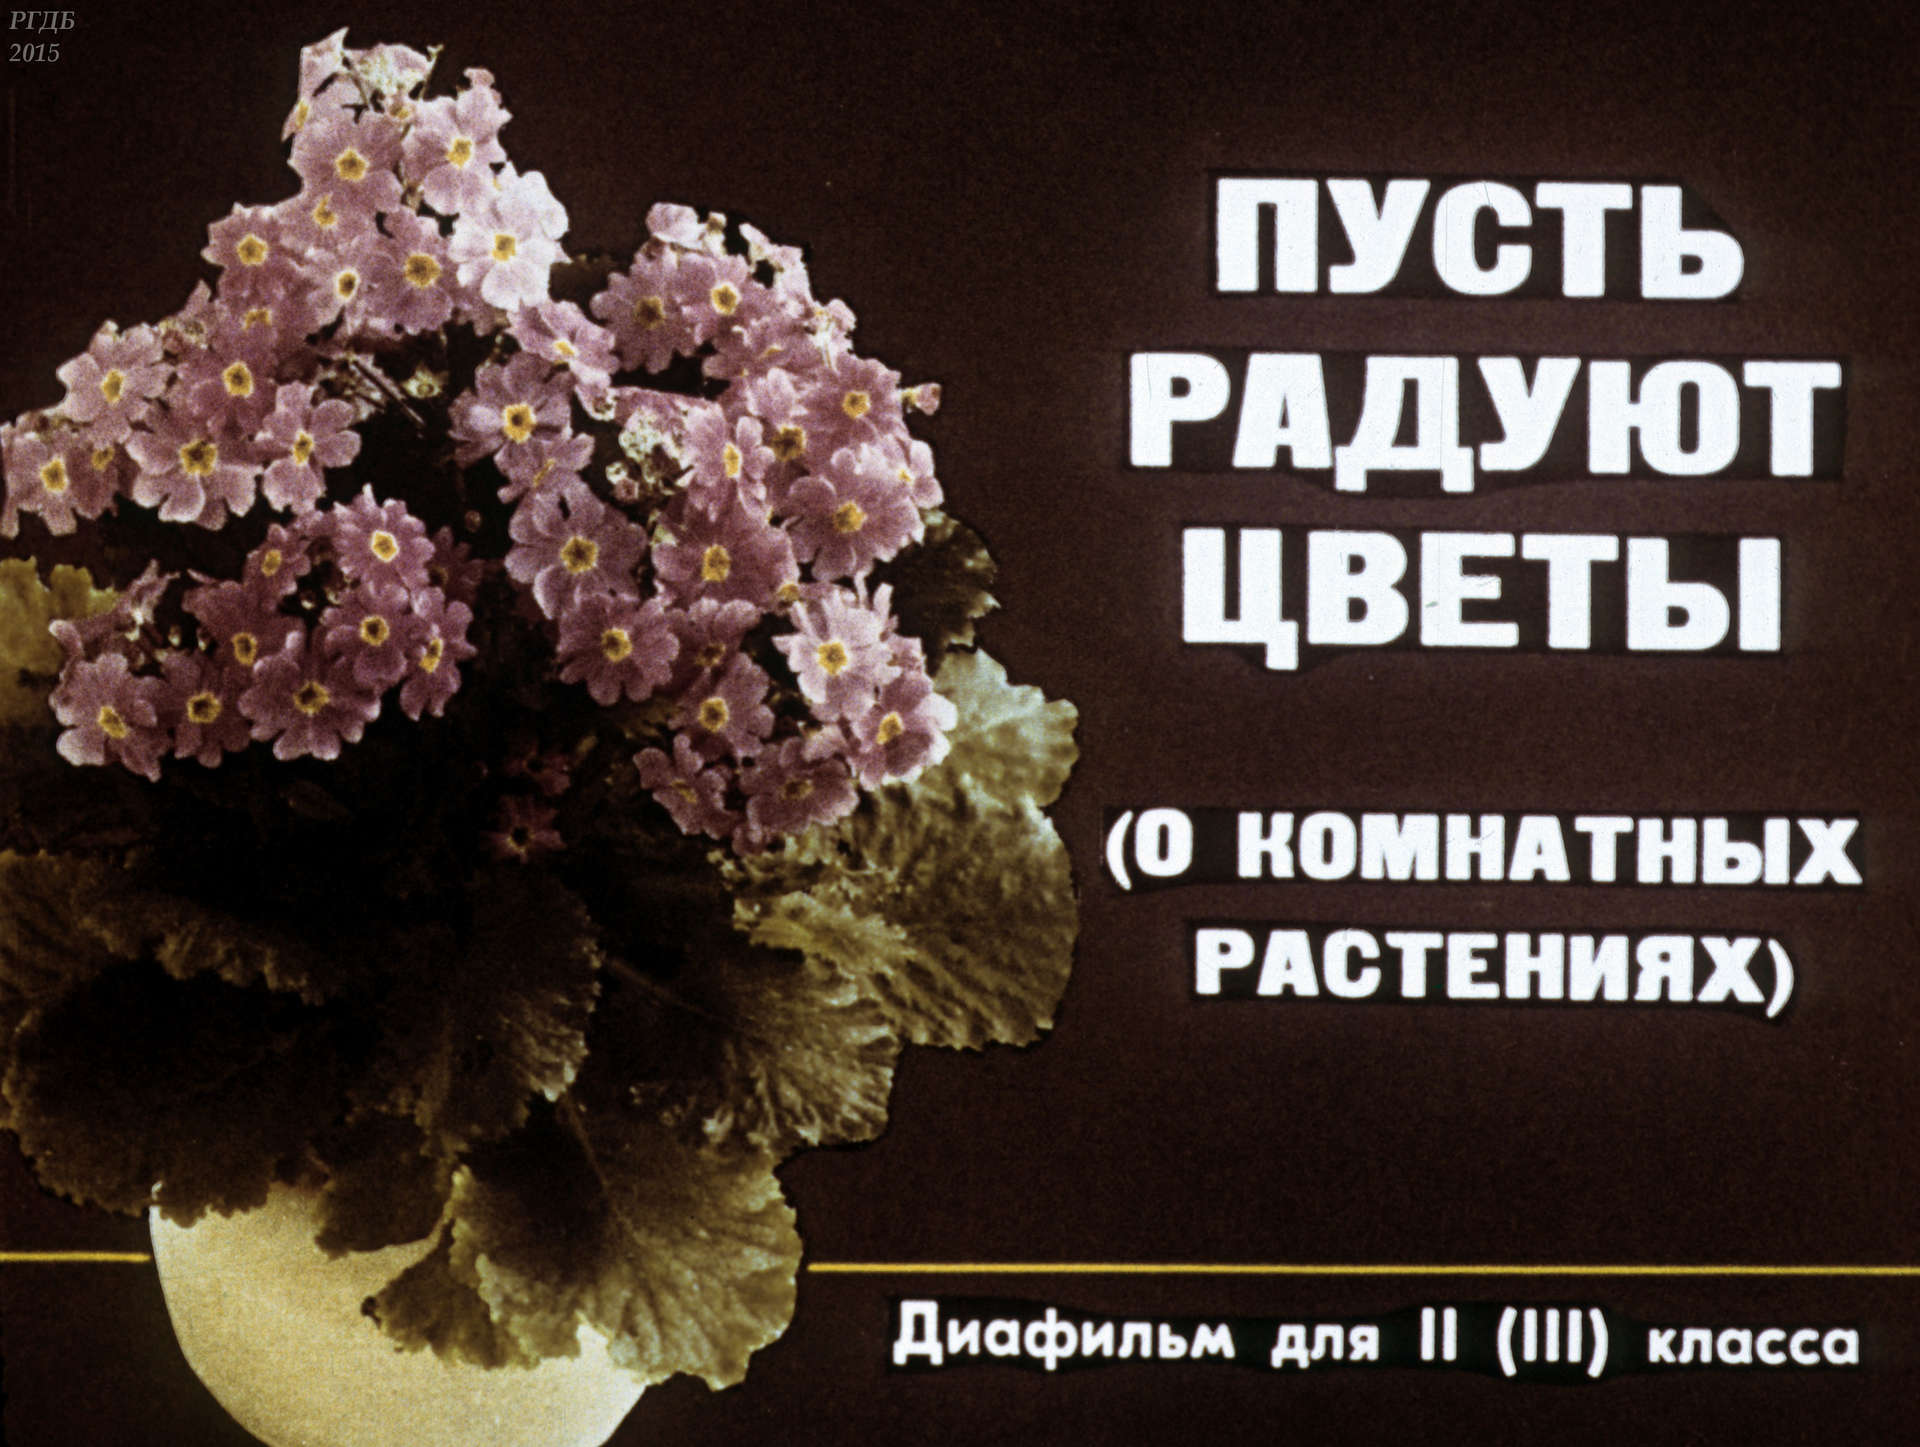 Сергеева Валентина Александровна - Пусть радуют цветы (о комнатных растениях) - 1990